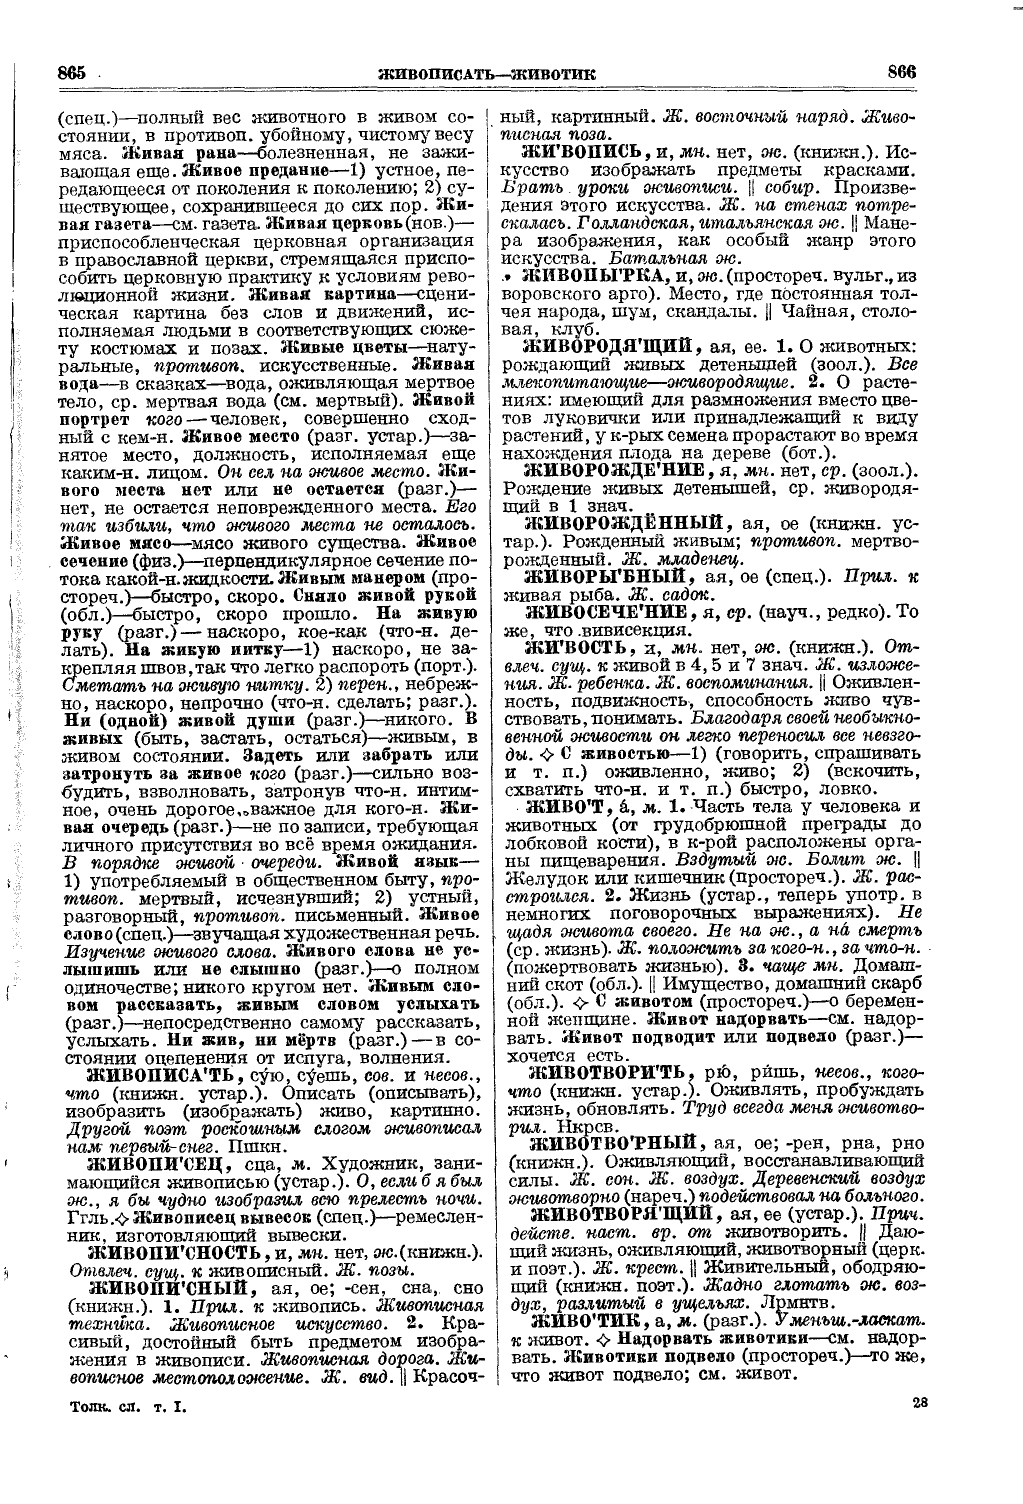 Фотокопия pdf / скан страницы 471 толкового словаря Ушакова (том 1)